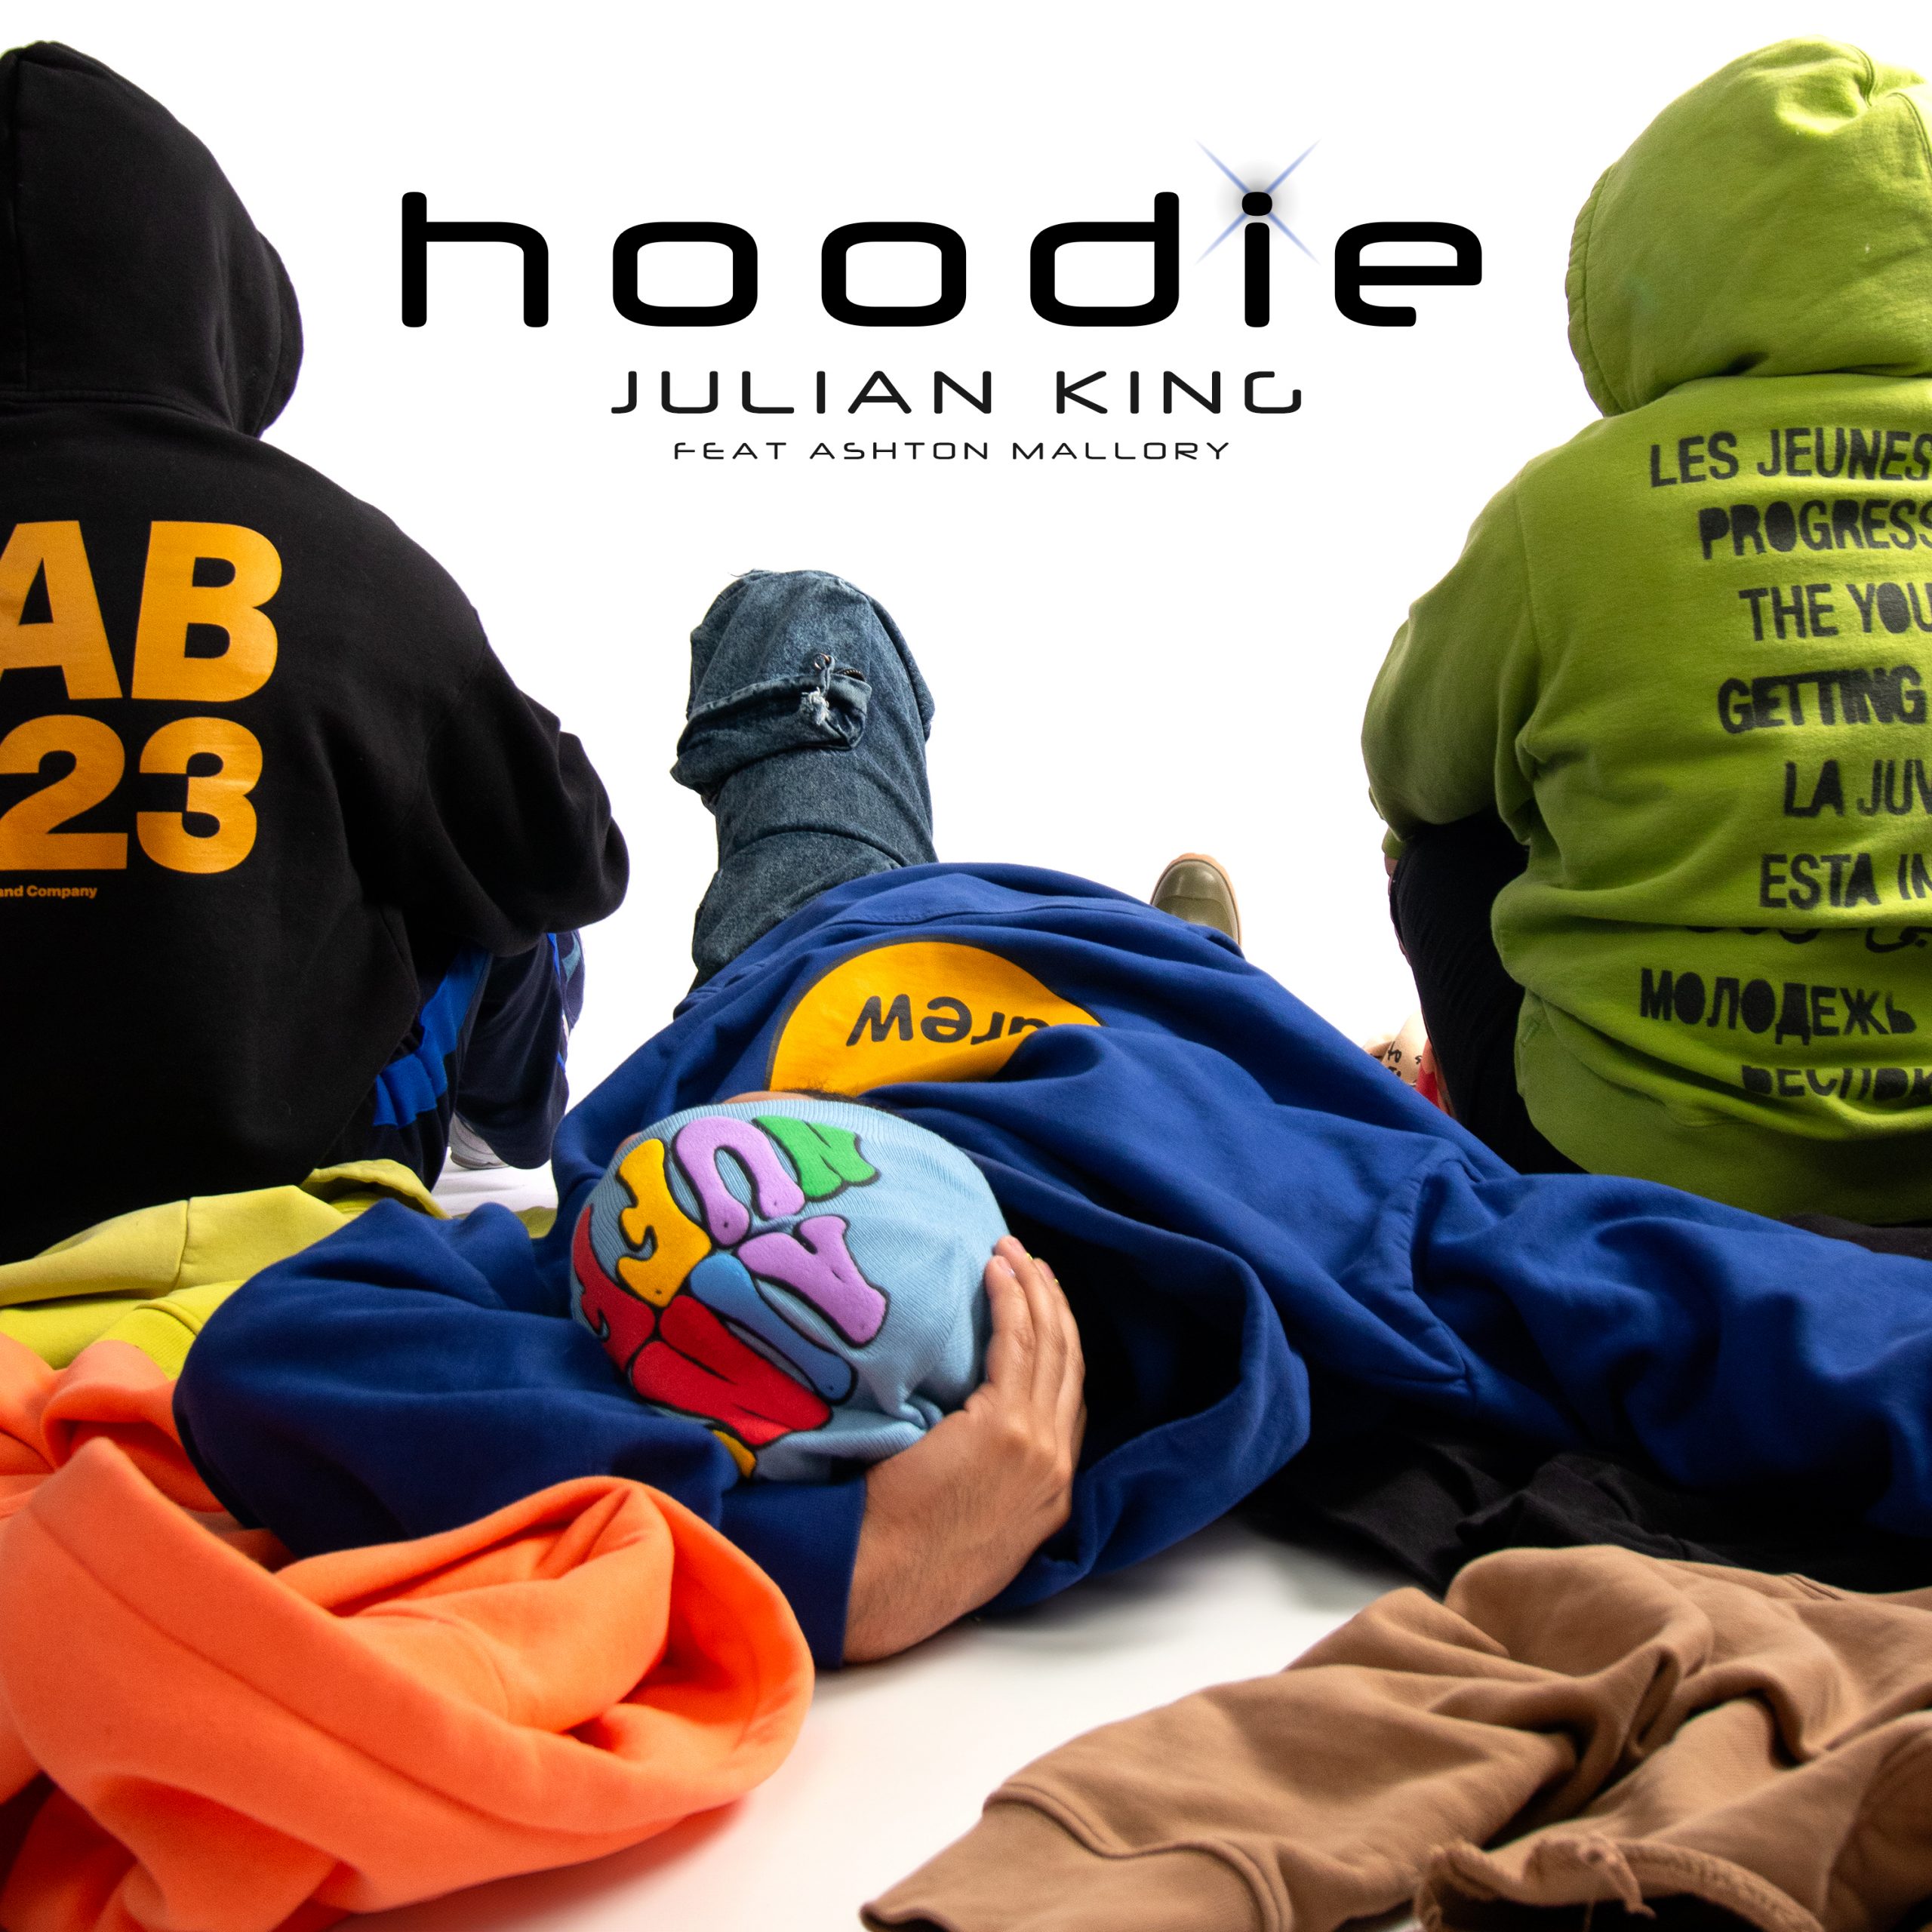 Exclusive Premiere: Julian King’s ‘Hoodie’ Set to Dominate Airwaves as POWERPLAY